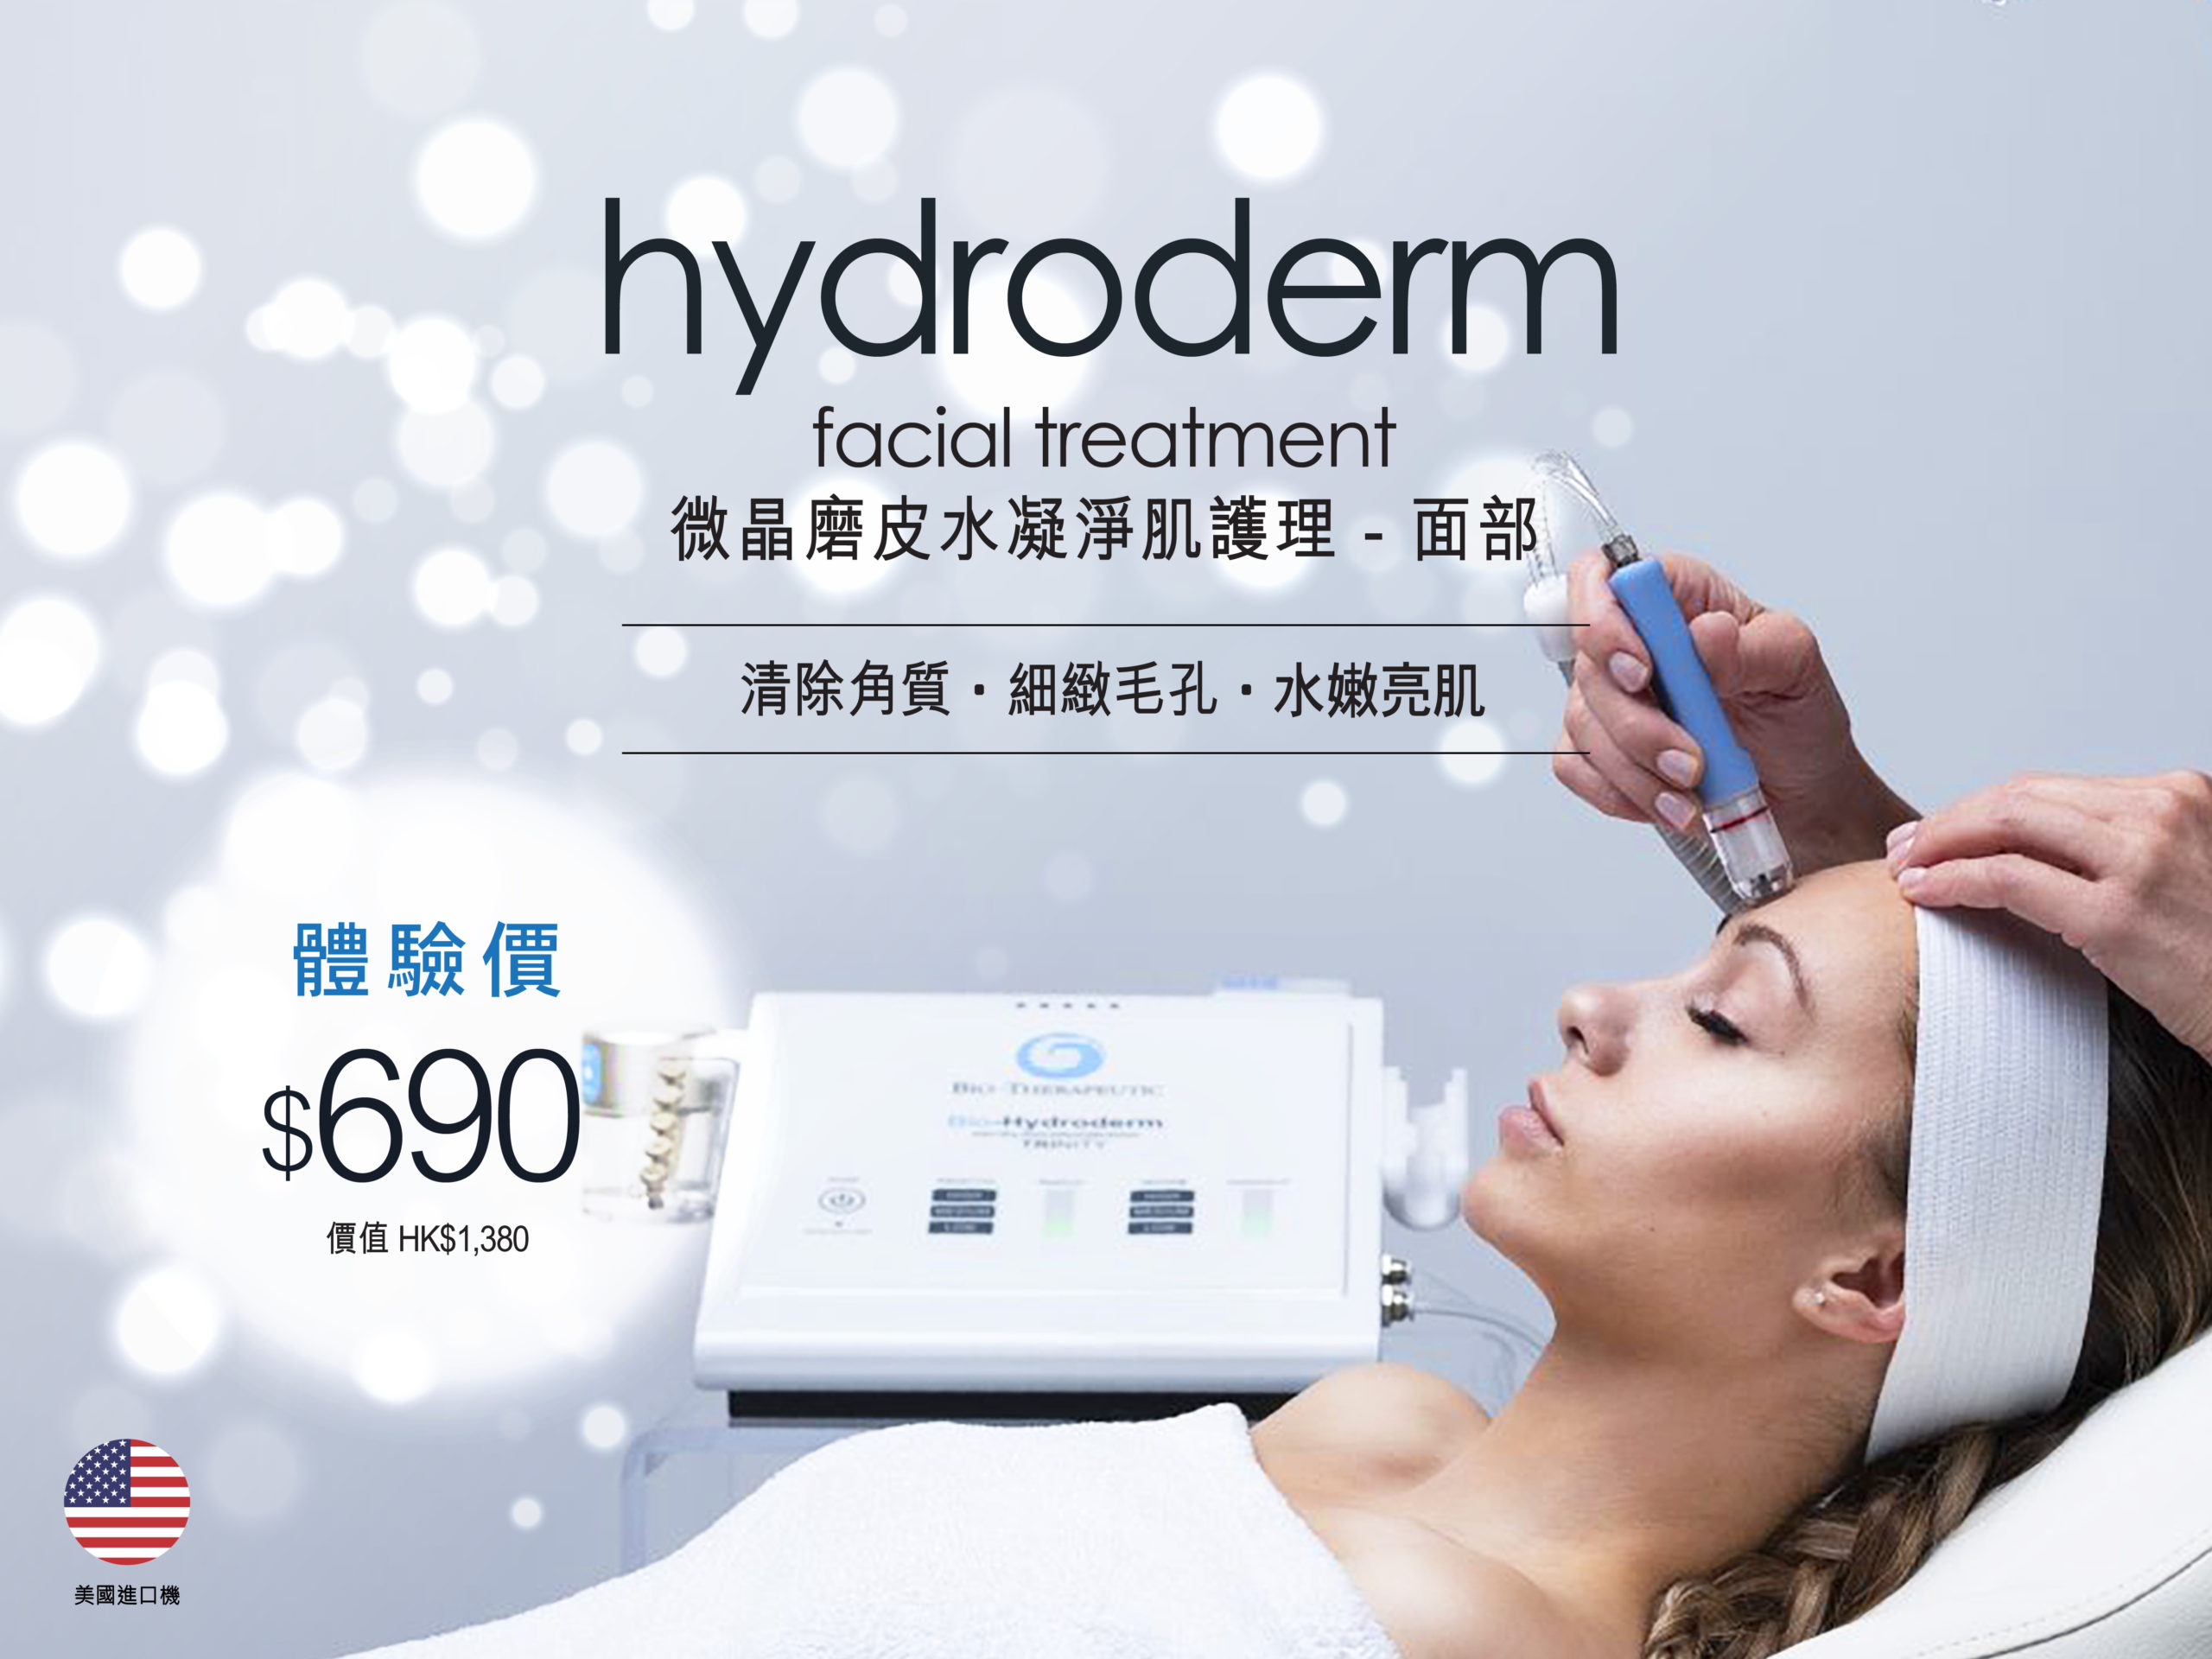 Hydroderm微晶磨皮水凝淨肌面部護理，能促進細胞更新，為肌膚補充水分，改善毛孔問題